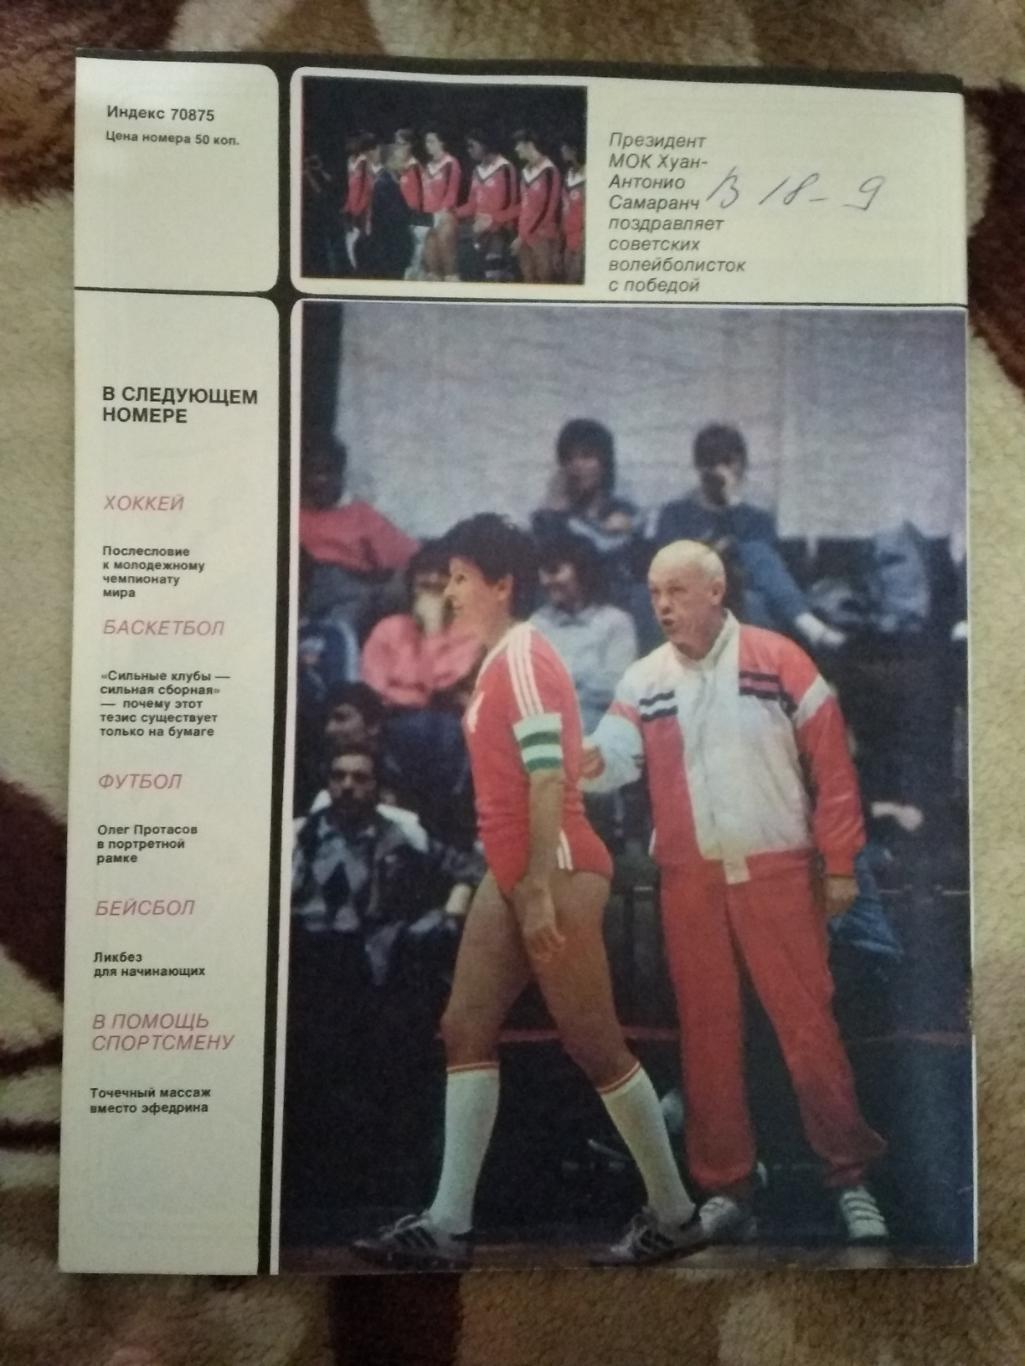 Журнал.Спортивные игры № 3 1988 г. 1